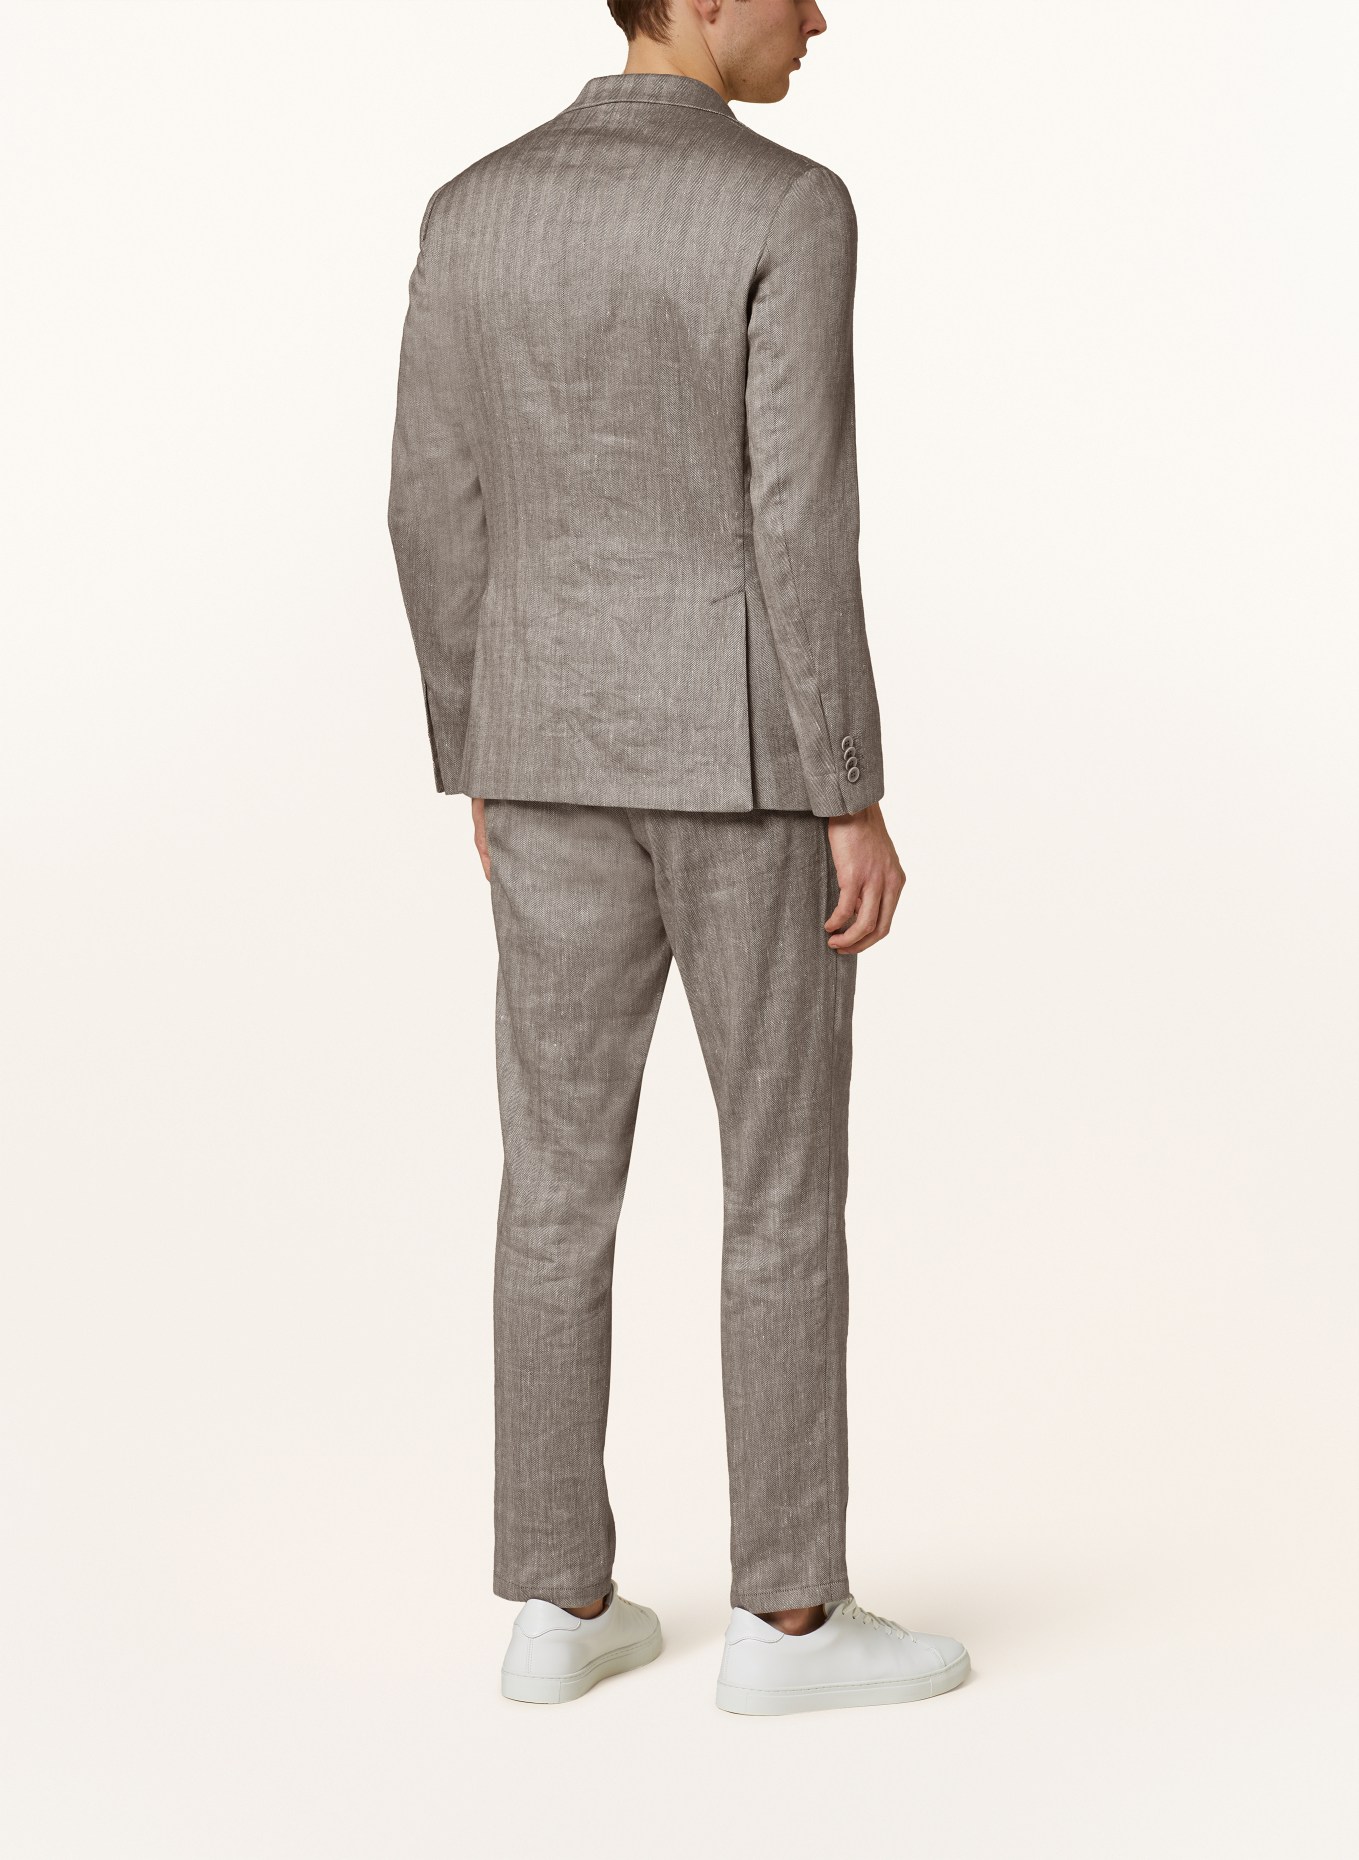 PAUL Suit jacket slim fit with linen, Color: 820 Brown (Image 3)